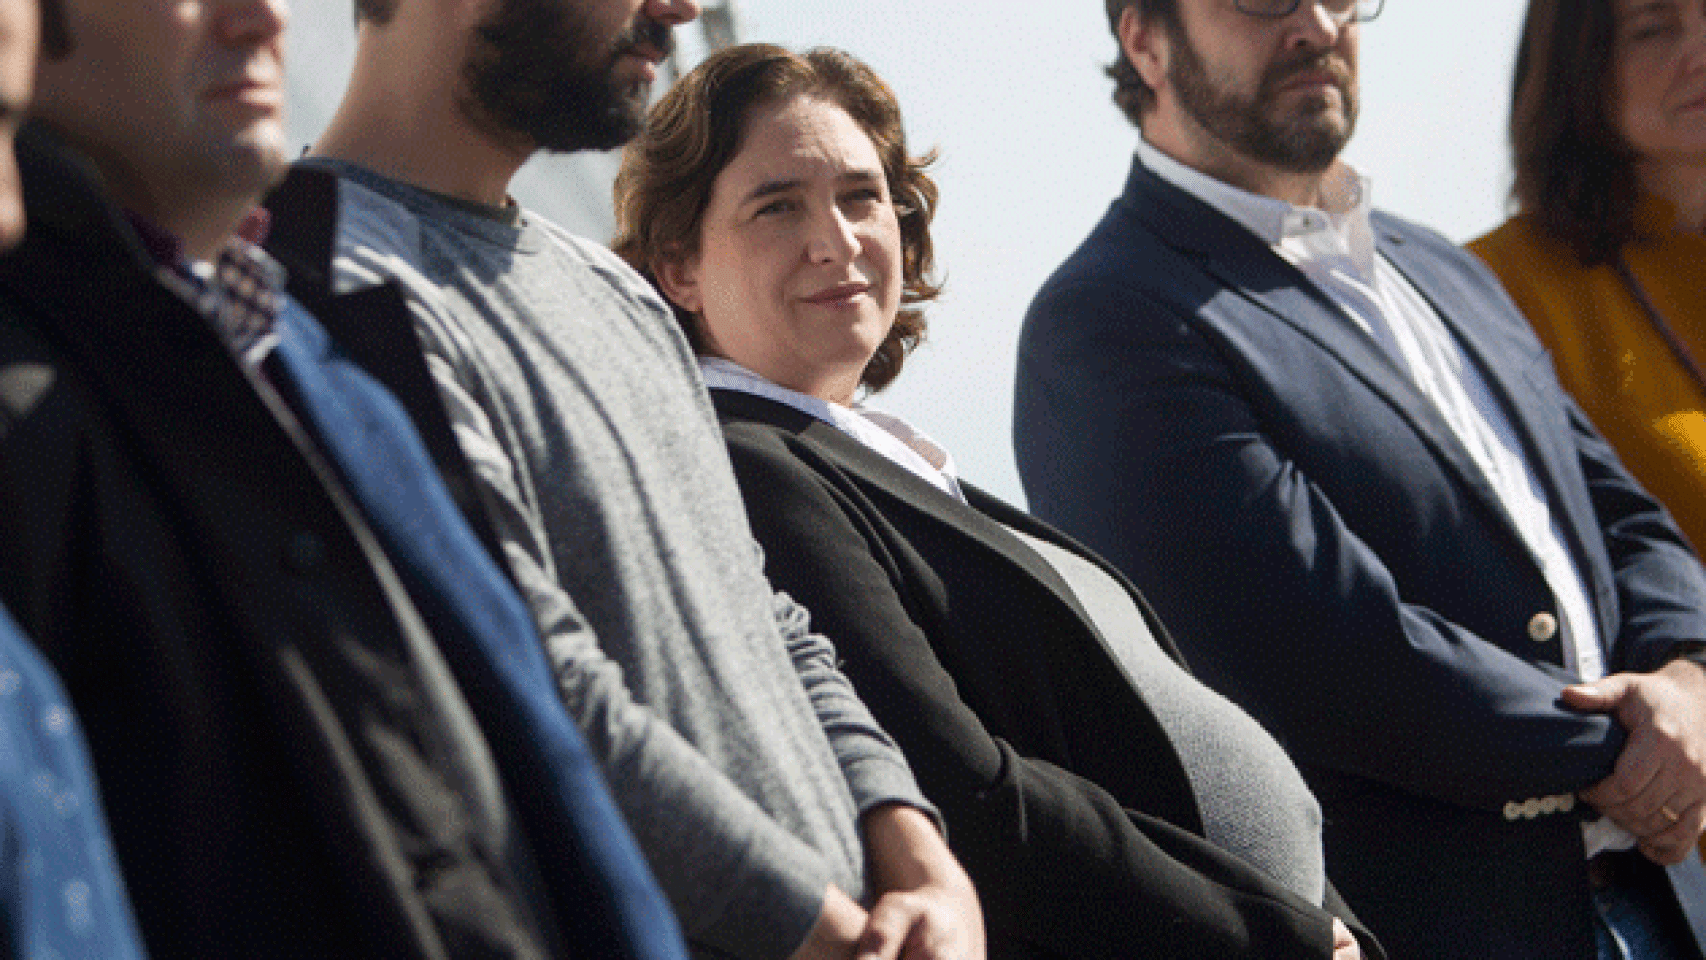 Ada Colau, alcaldesa de Barcelona, en un acto la pasada semana / EFE